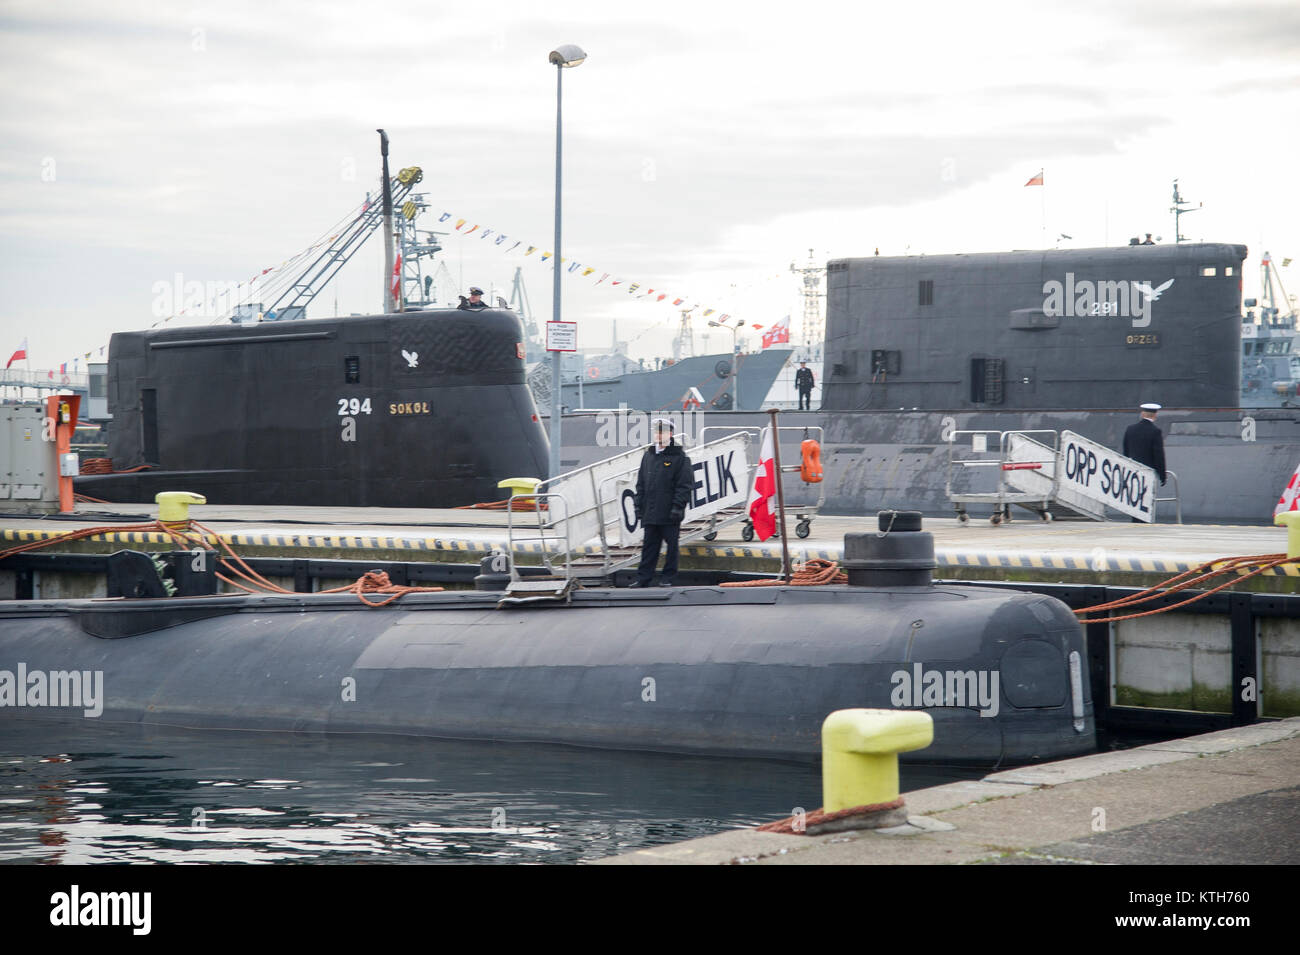 Sous-marin de la classe Kobben polonais ORP Sokol 294 et 877E (Projet de classe Kilo par sous-marin) de l'OTAN 291 ORP Orzel à Gdynia, Pologne. 20 Juin, 2017 © Wojci Banque D'Images